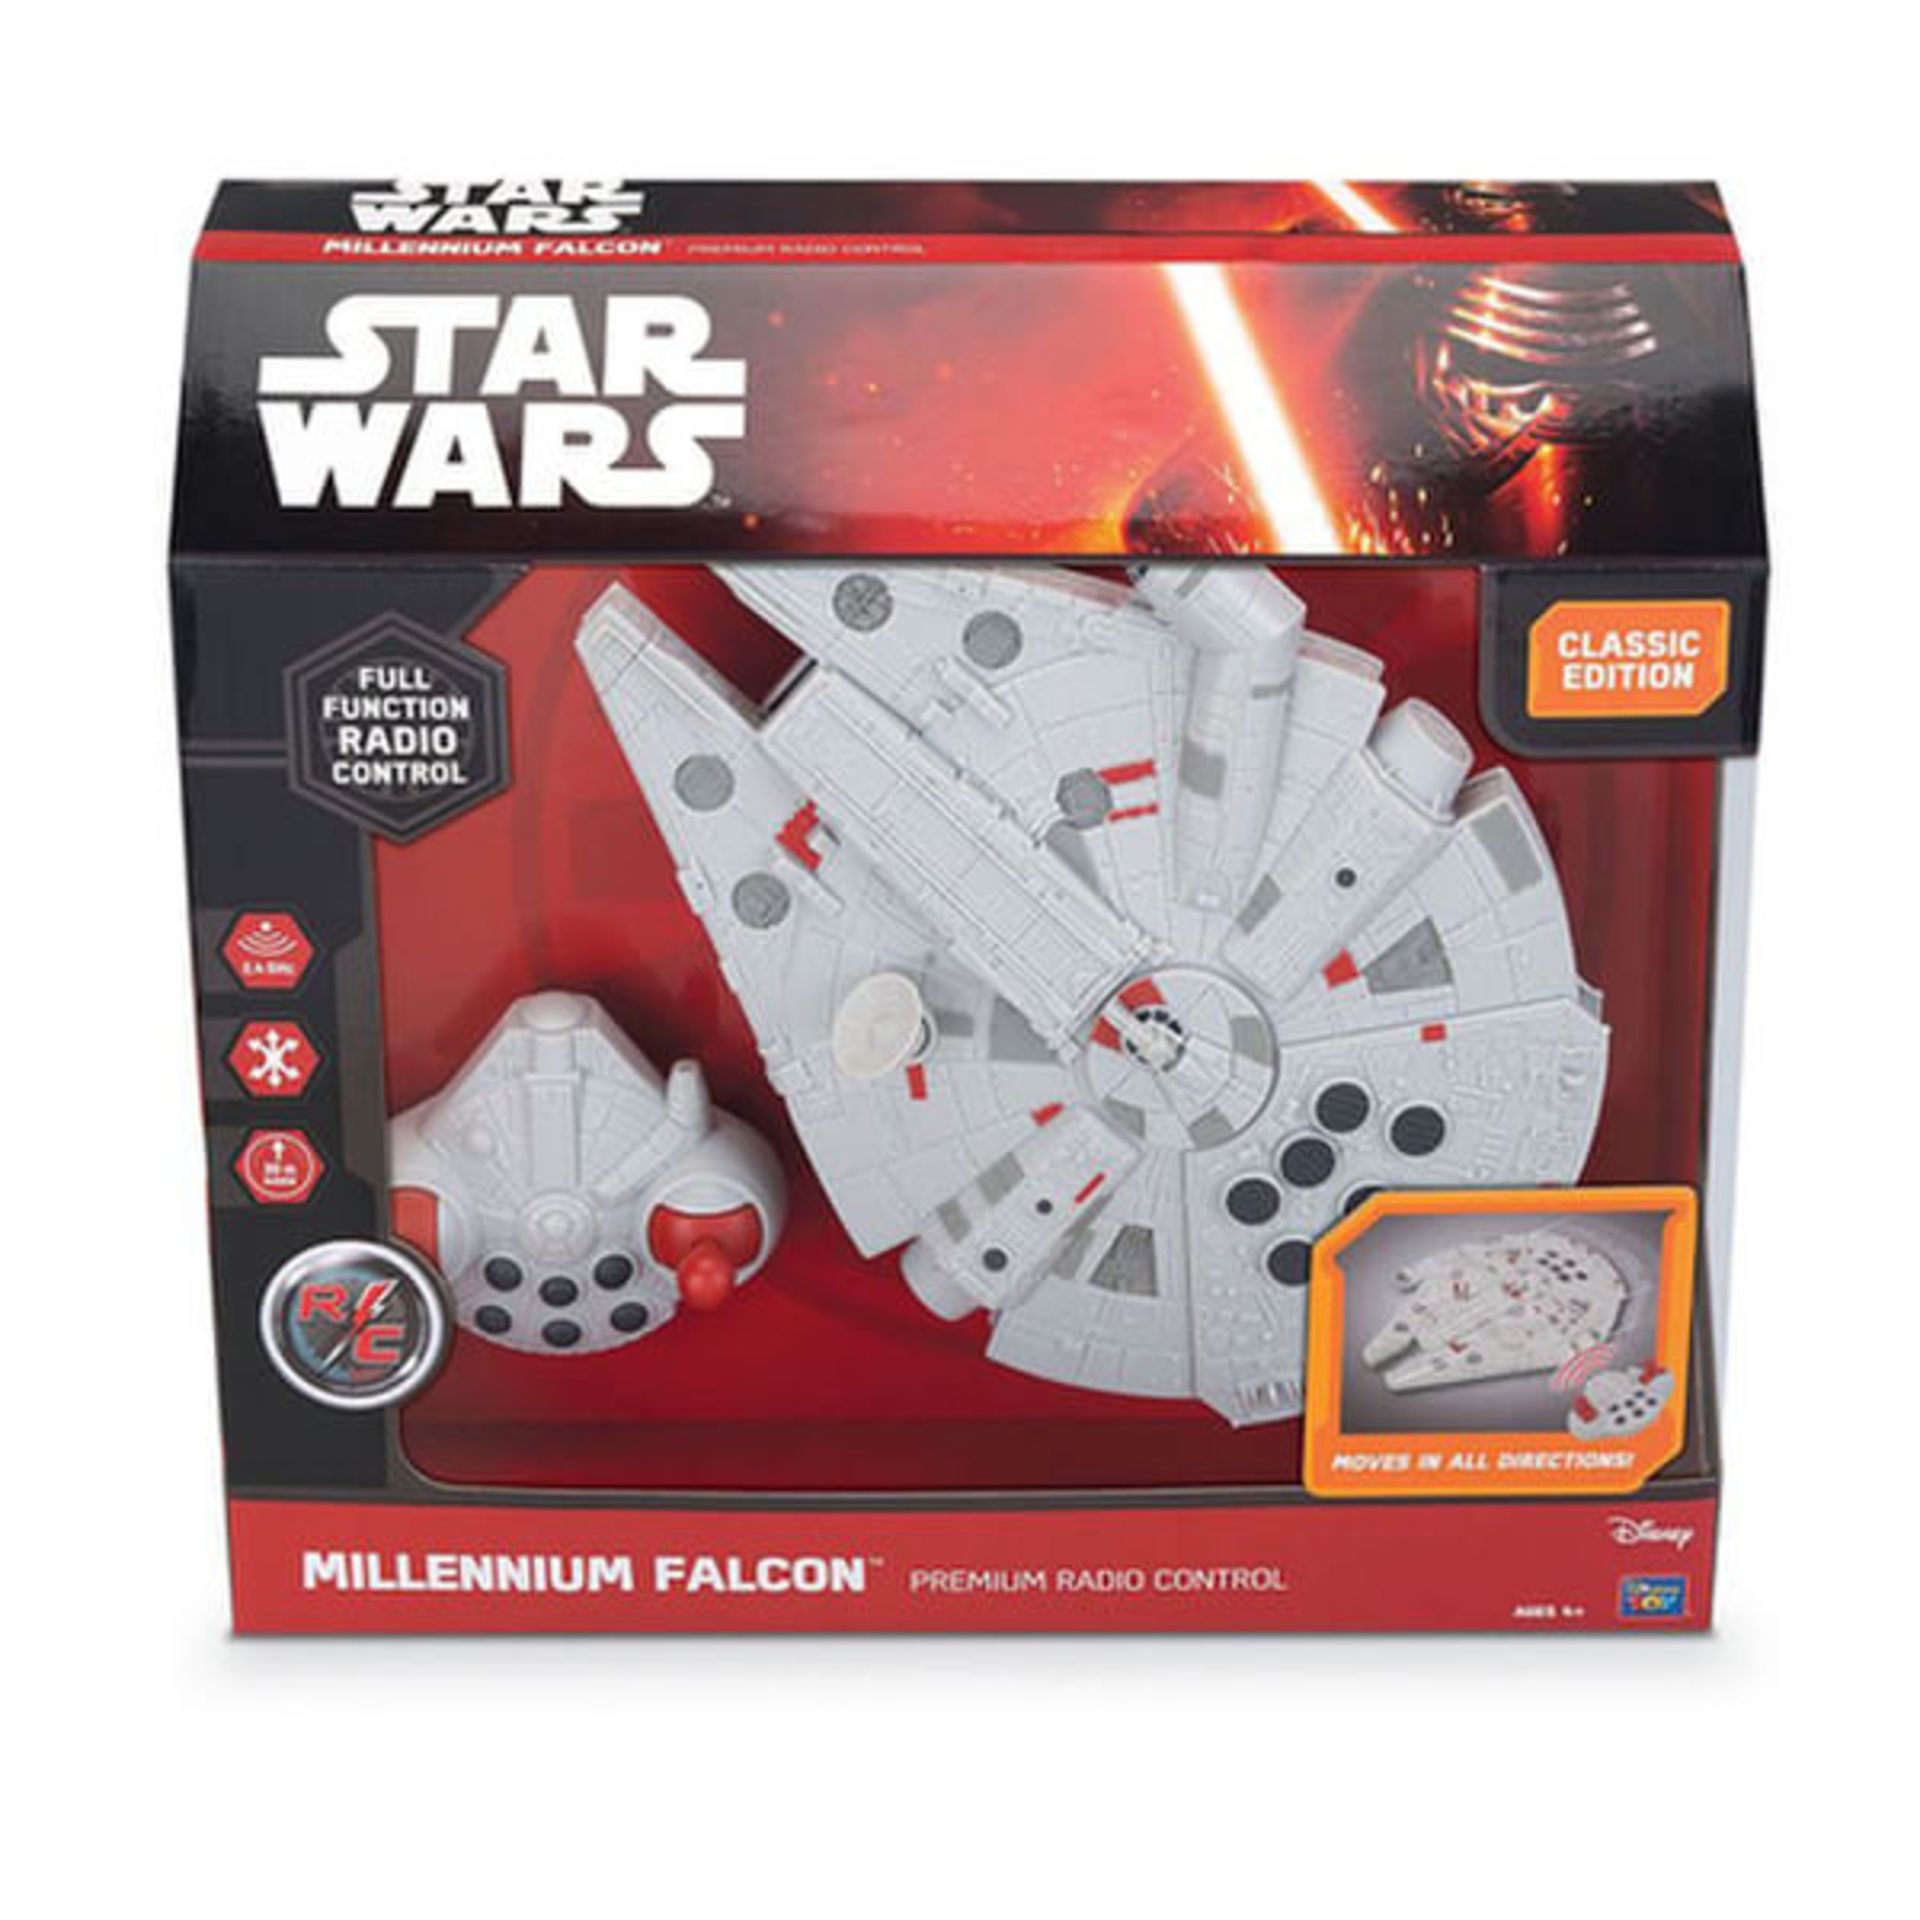 V Brand New Star Wars Millennium Falcon Remote Control Vehicle Amazon Price £23.91